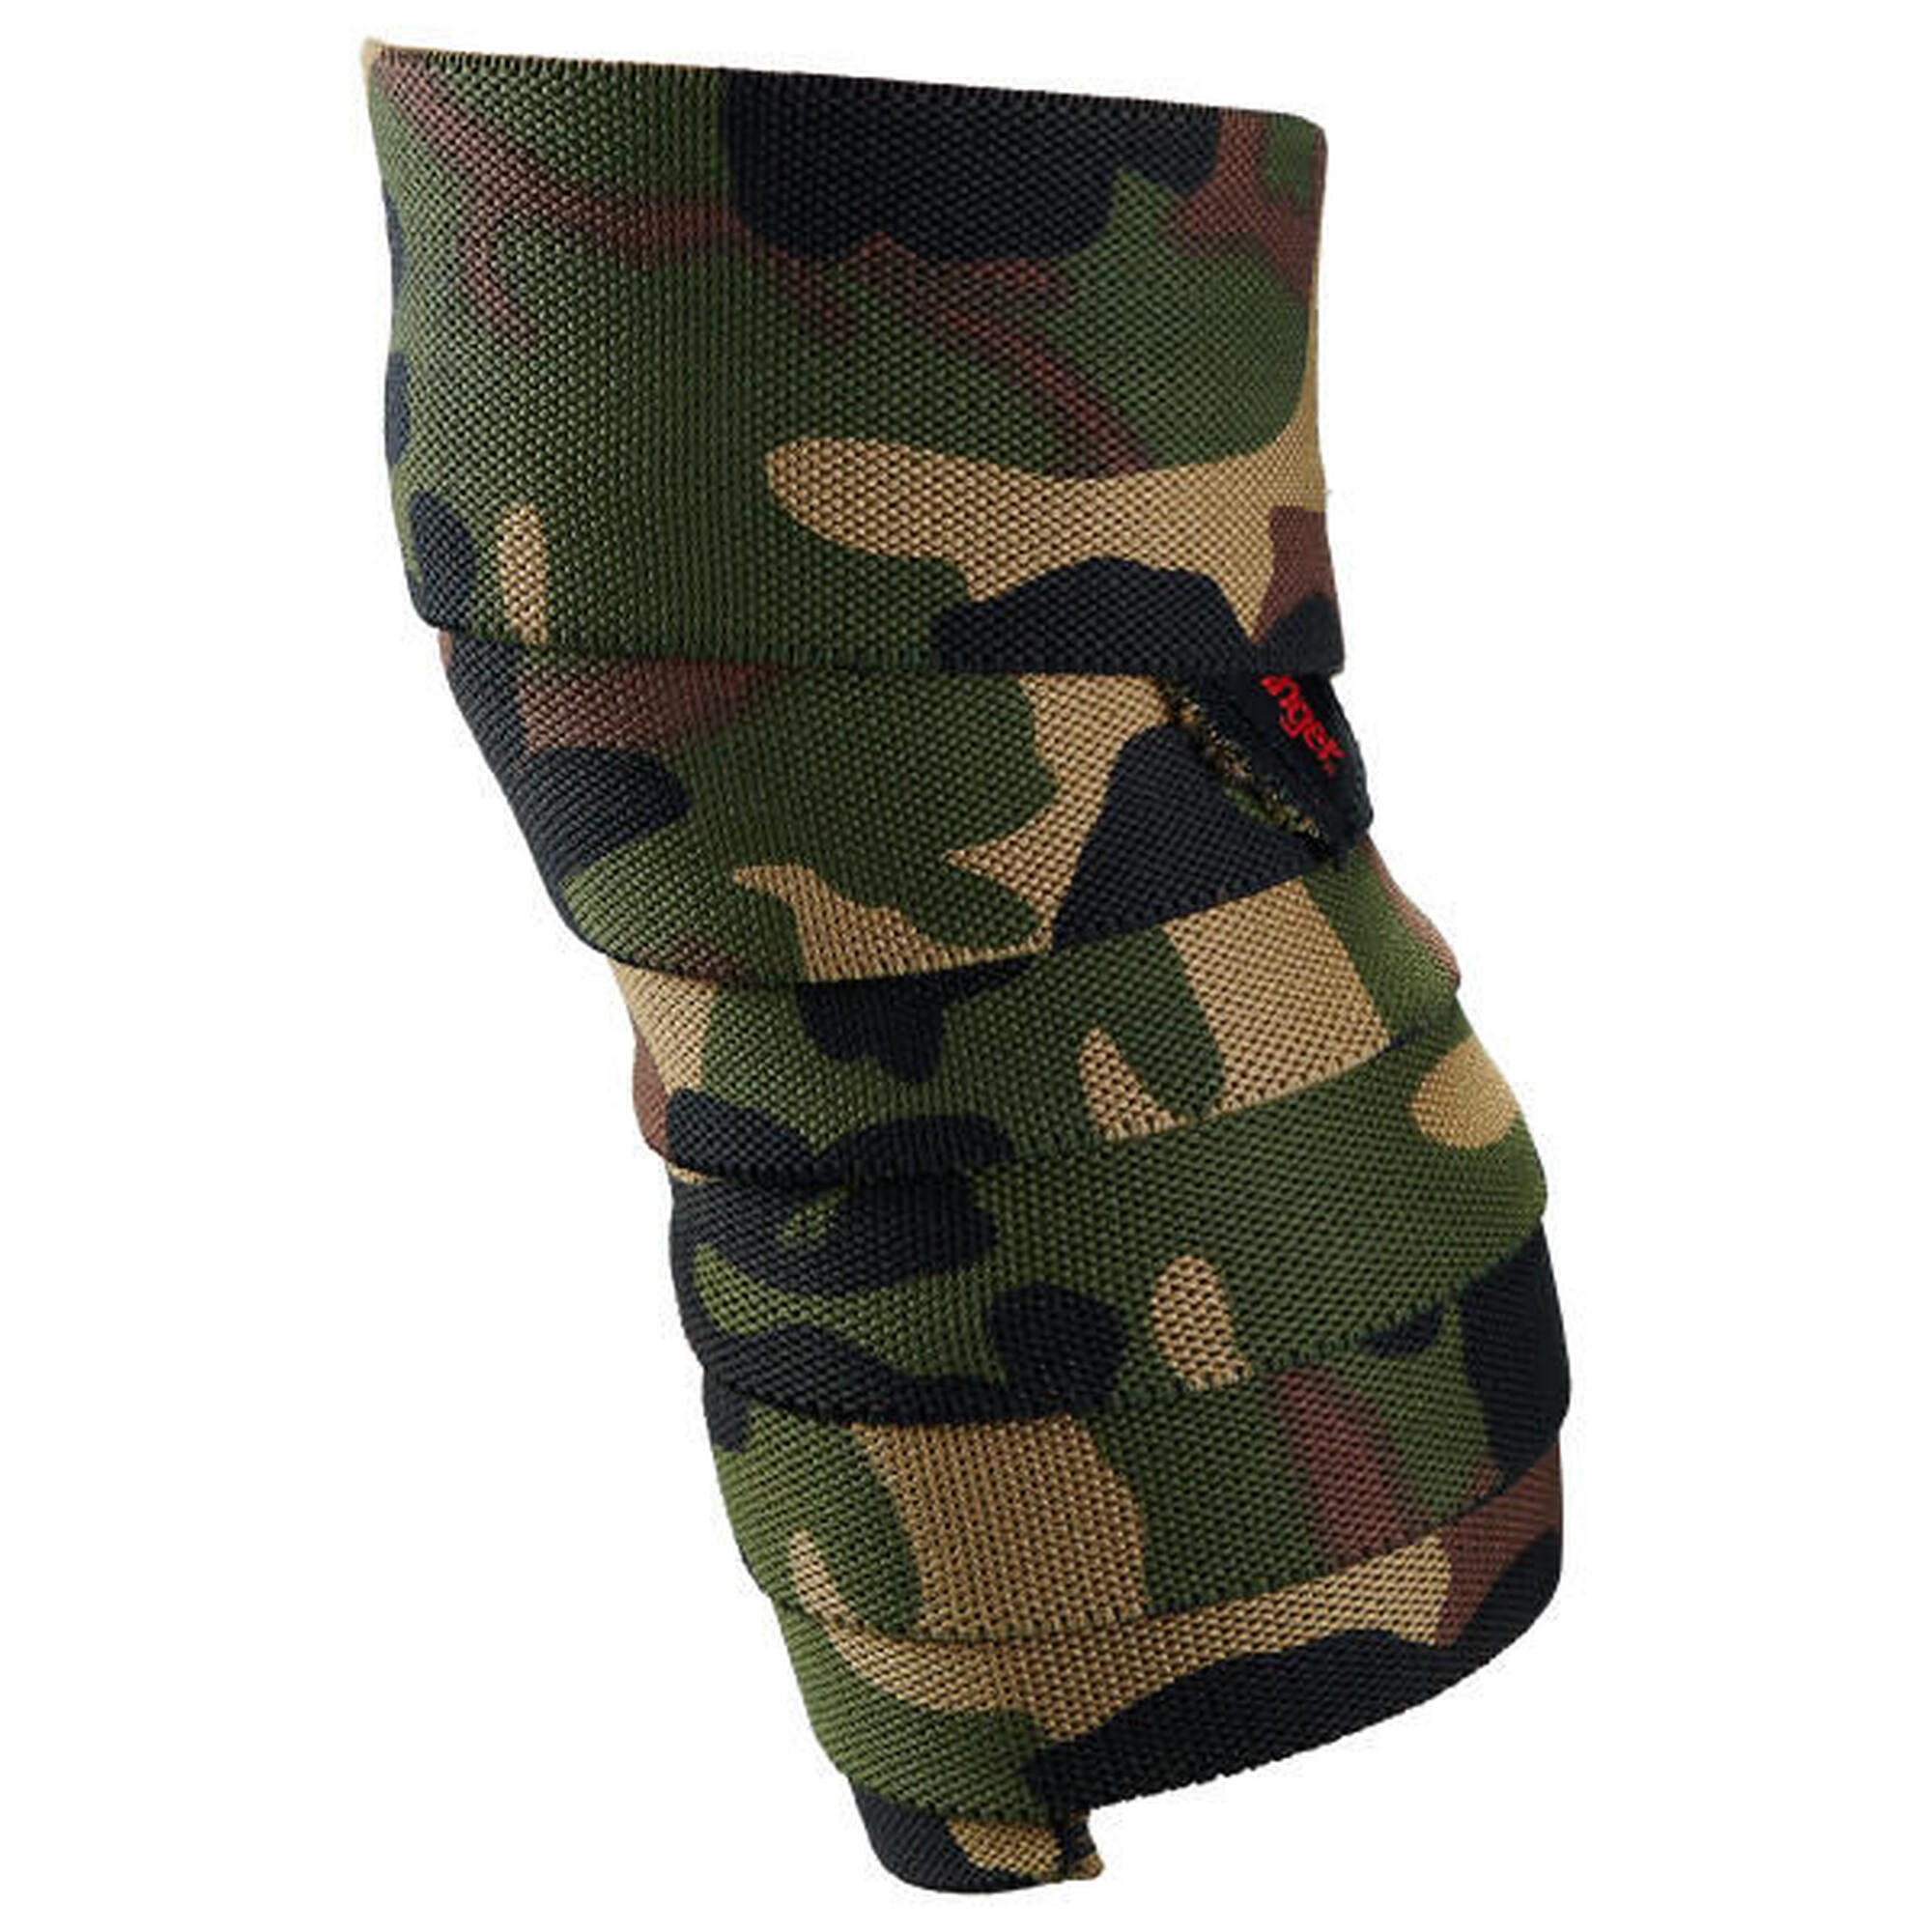 Harbinger Knee Wraps: zorgen voor stabiliteit en positionering van de knie